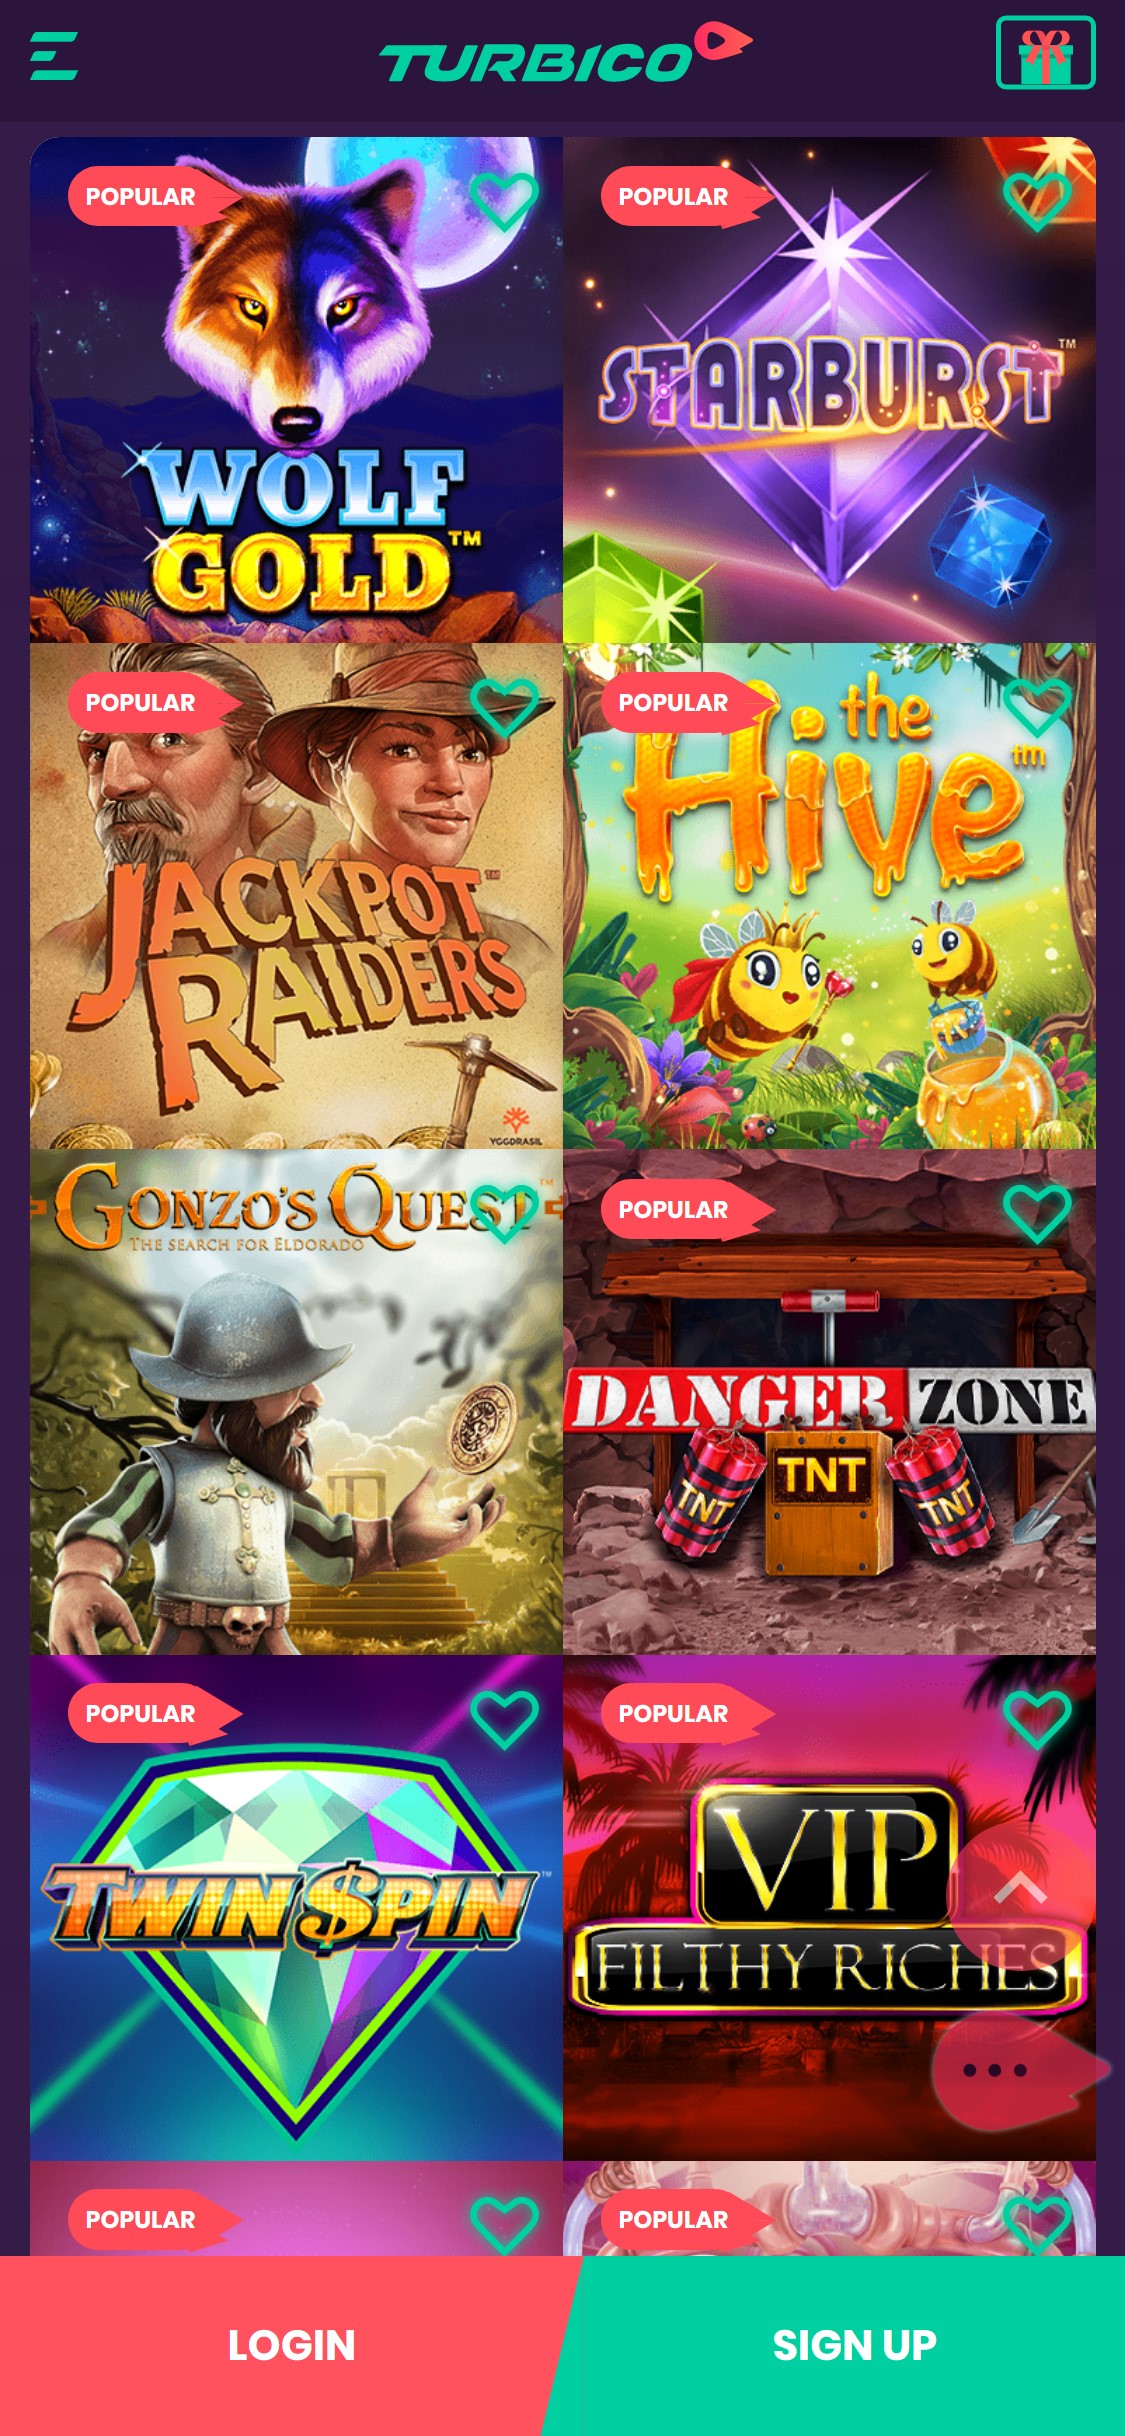 Turbico Casino Mobile Games Review